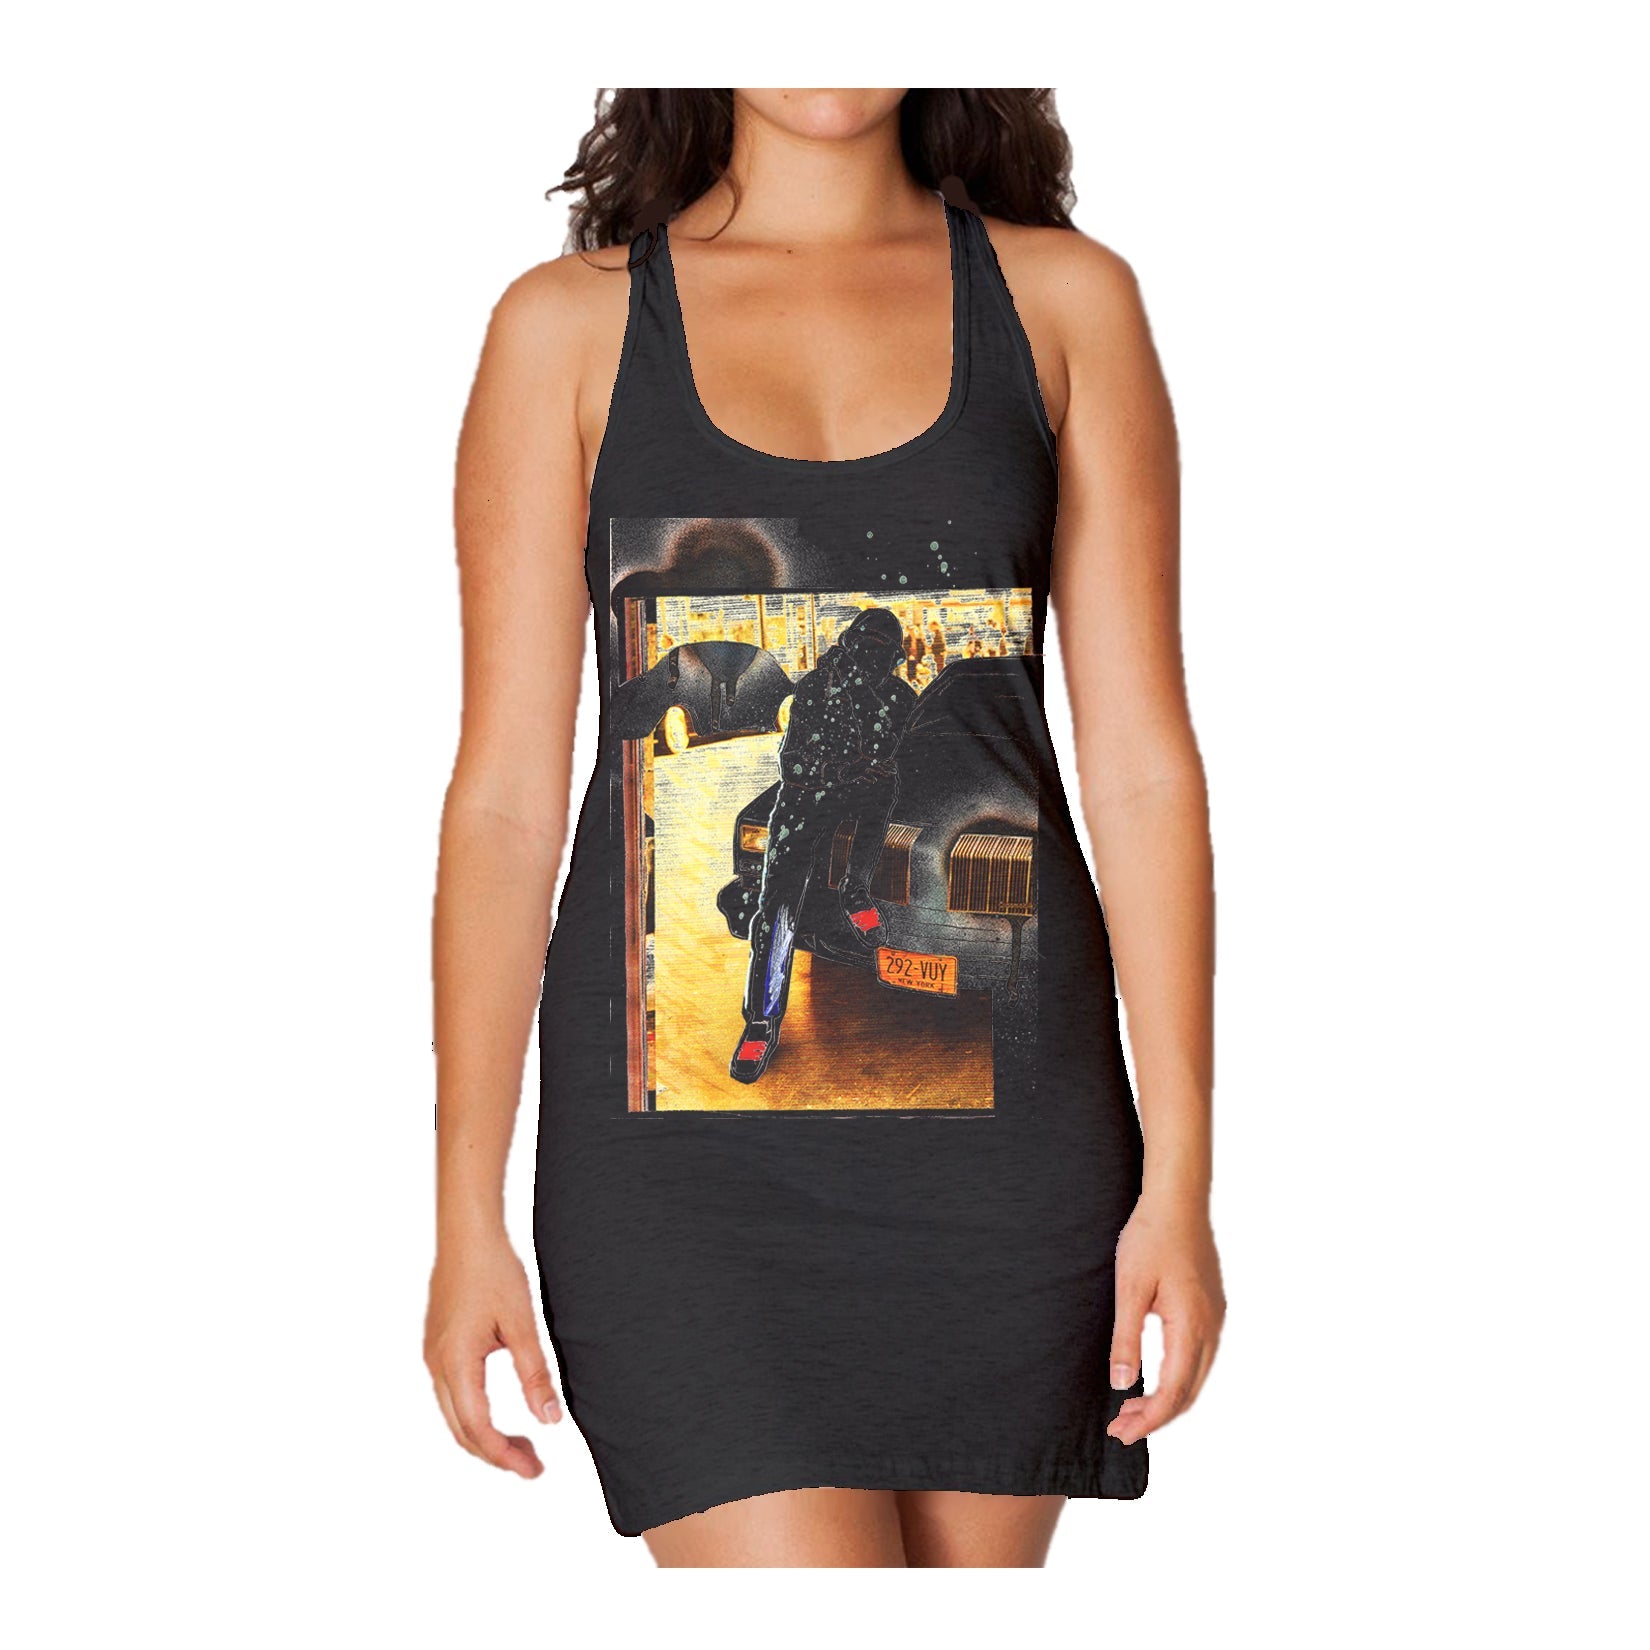 US Brand X Old's Kool Lean Official Women's Tank Dress ()